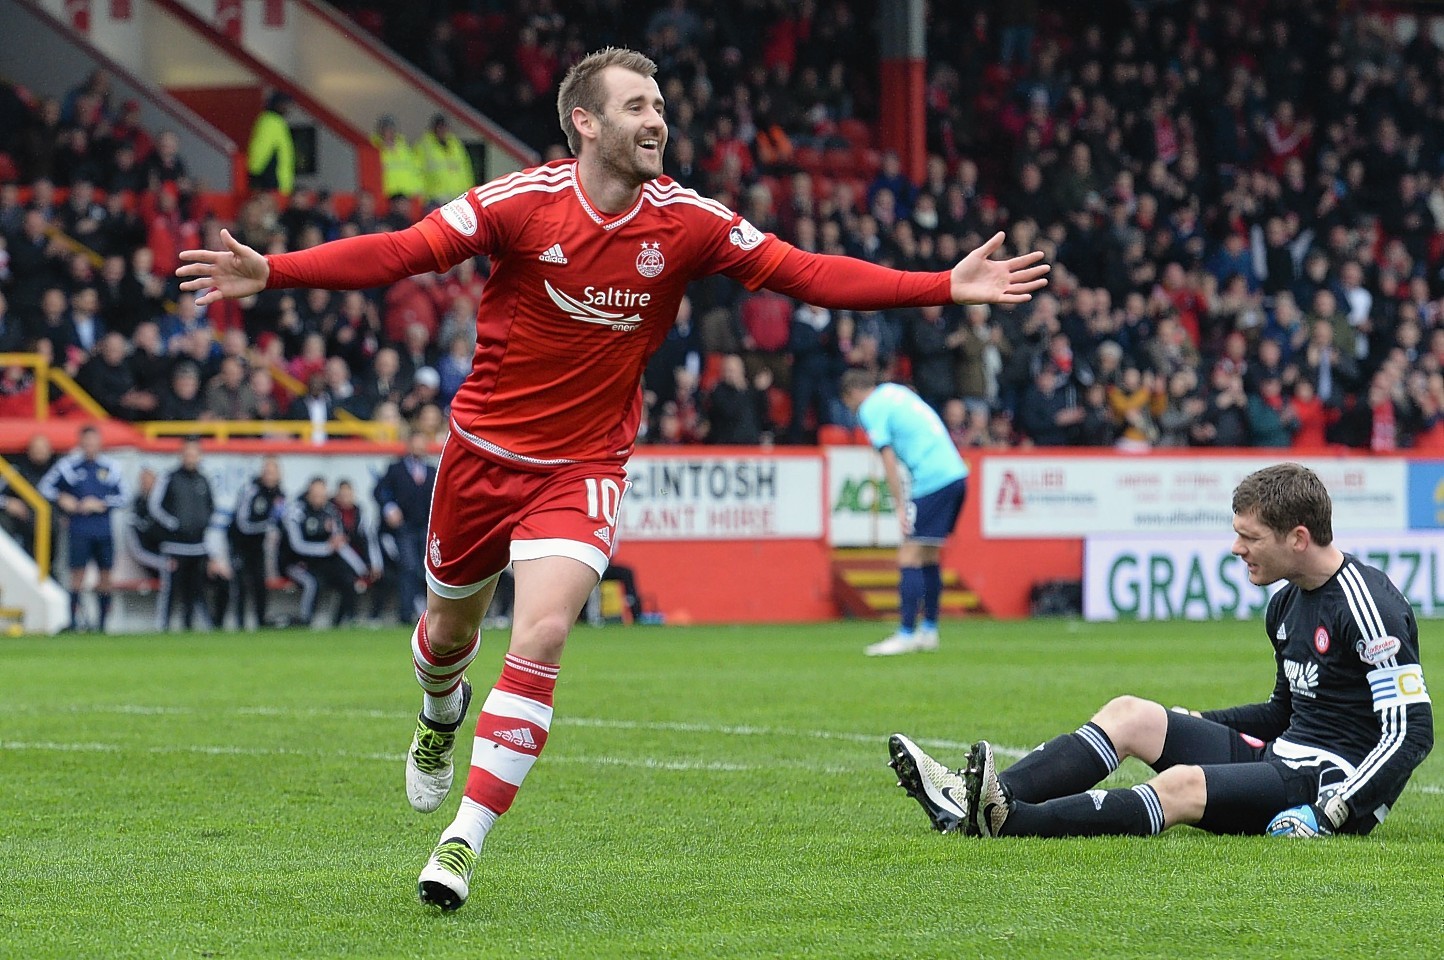 Aberdeen's Niall McGinn celebrates after making it 2-0.